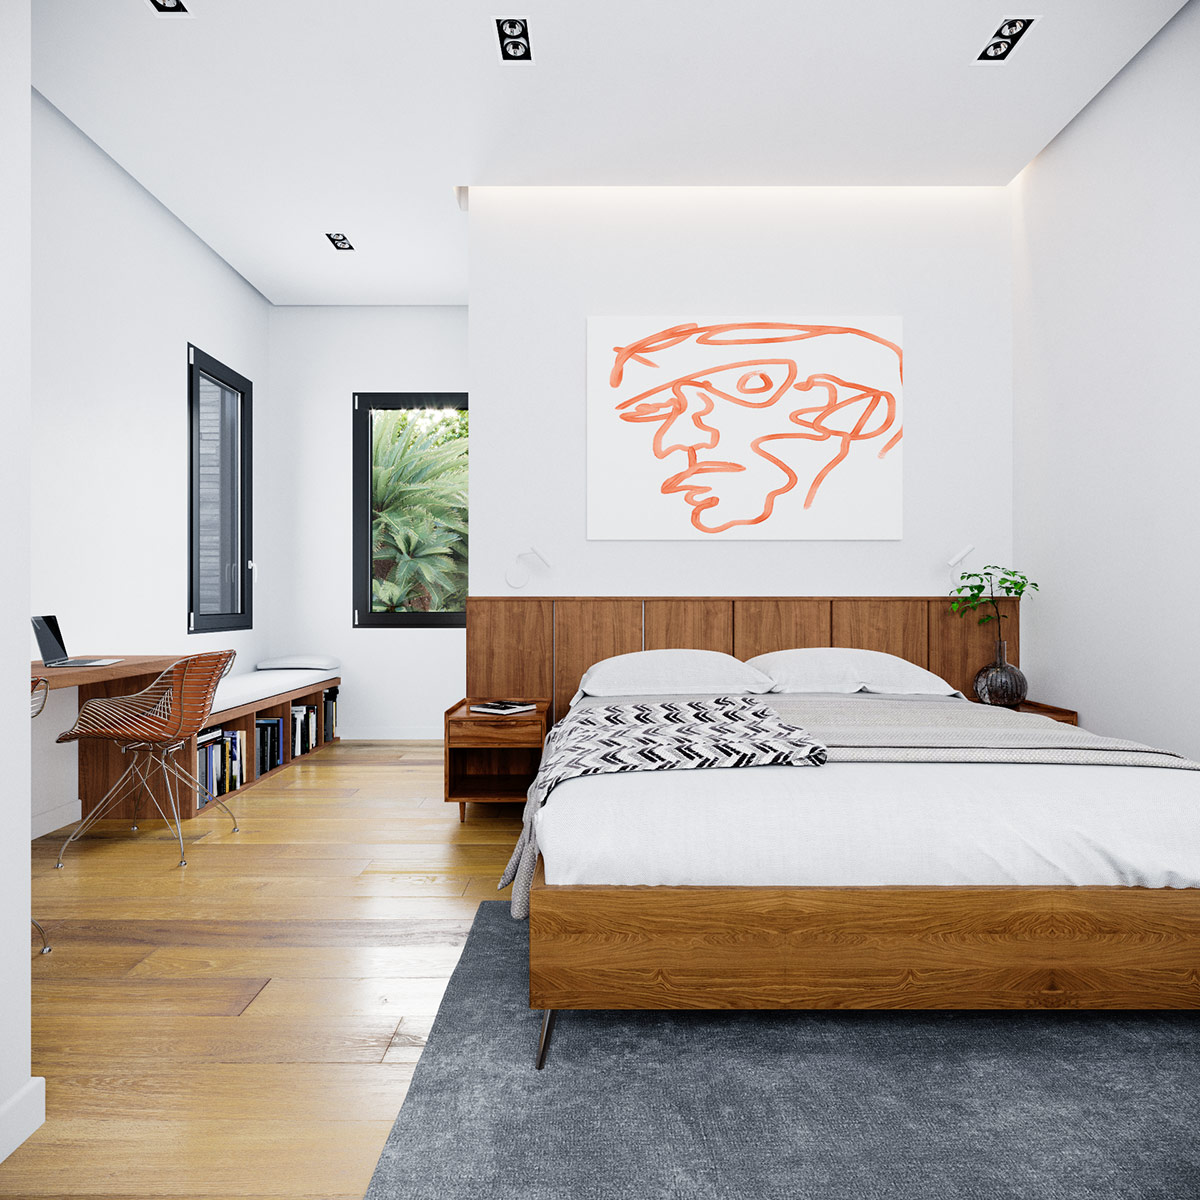 hình ảnh phòng ngủ hiện đại trong nhà phố với tranh nghệ thuật trừu tượng, giường ngủ phong cách giữa thế kỷ